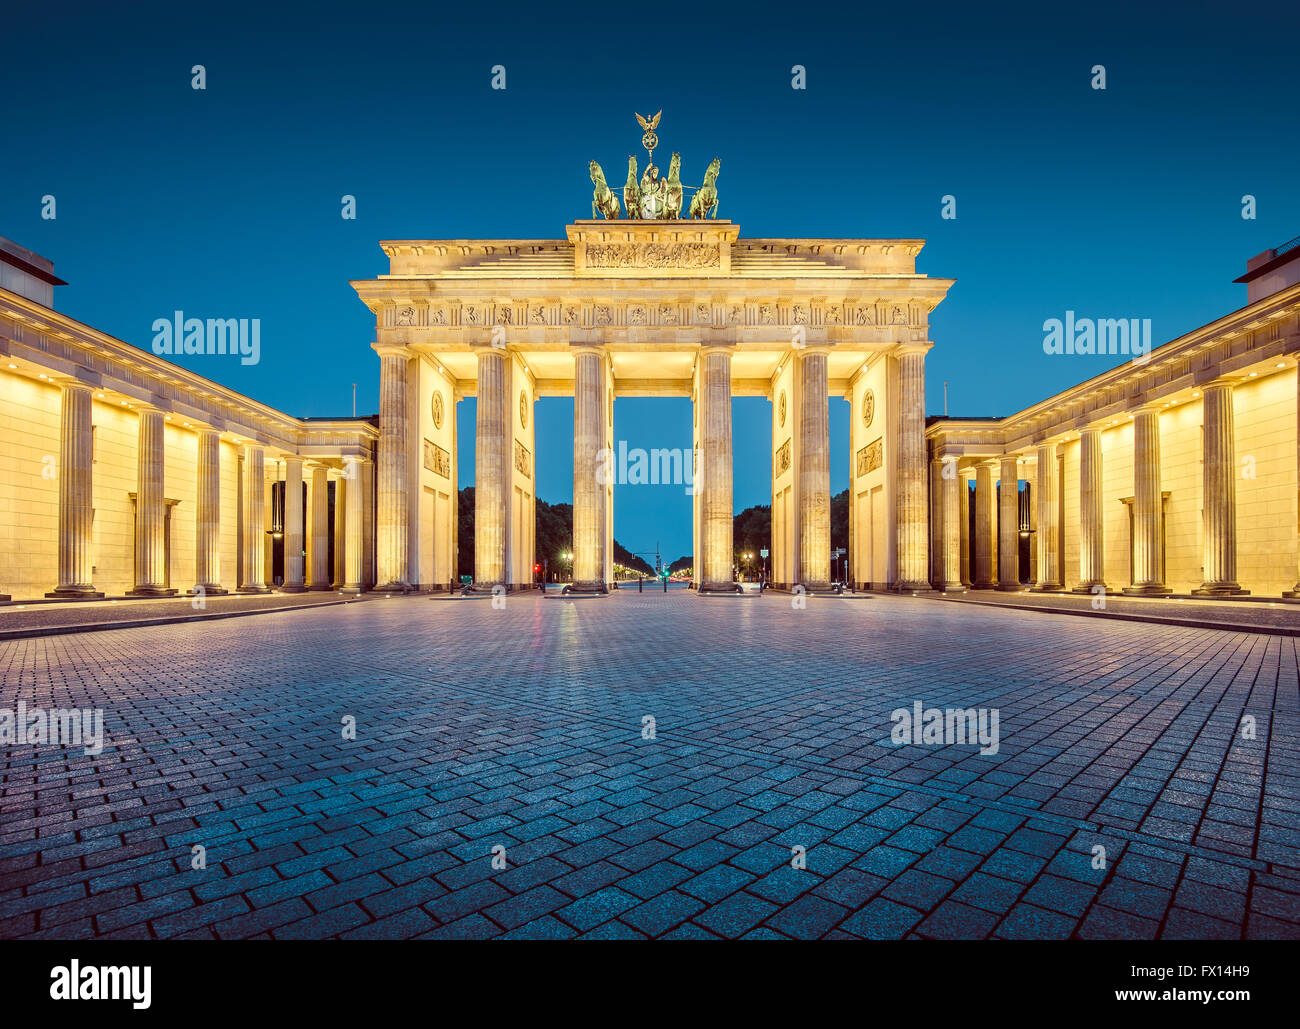 Vista clásica de la famosa Puerta de Brandenburgo en penumbra, el centro de Berlín, Alemania Foto de stock